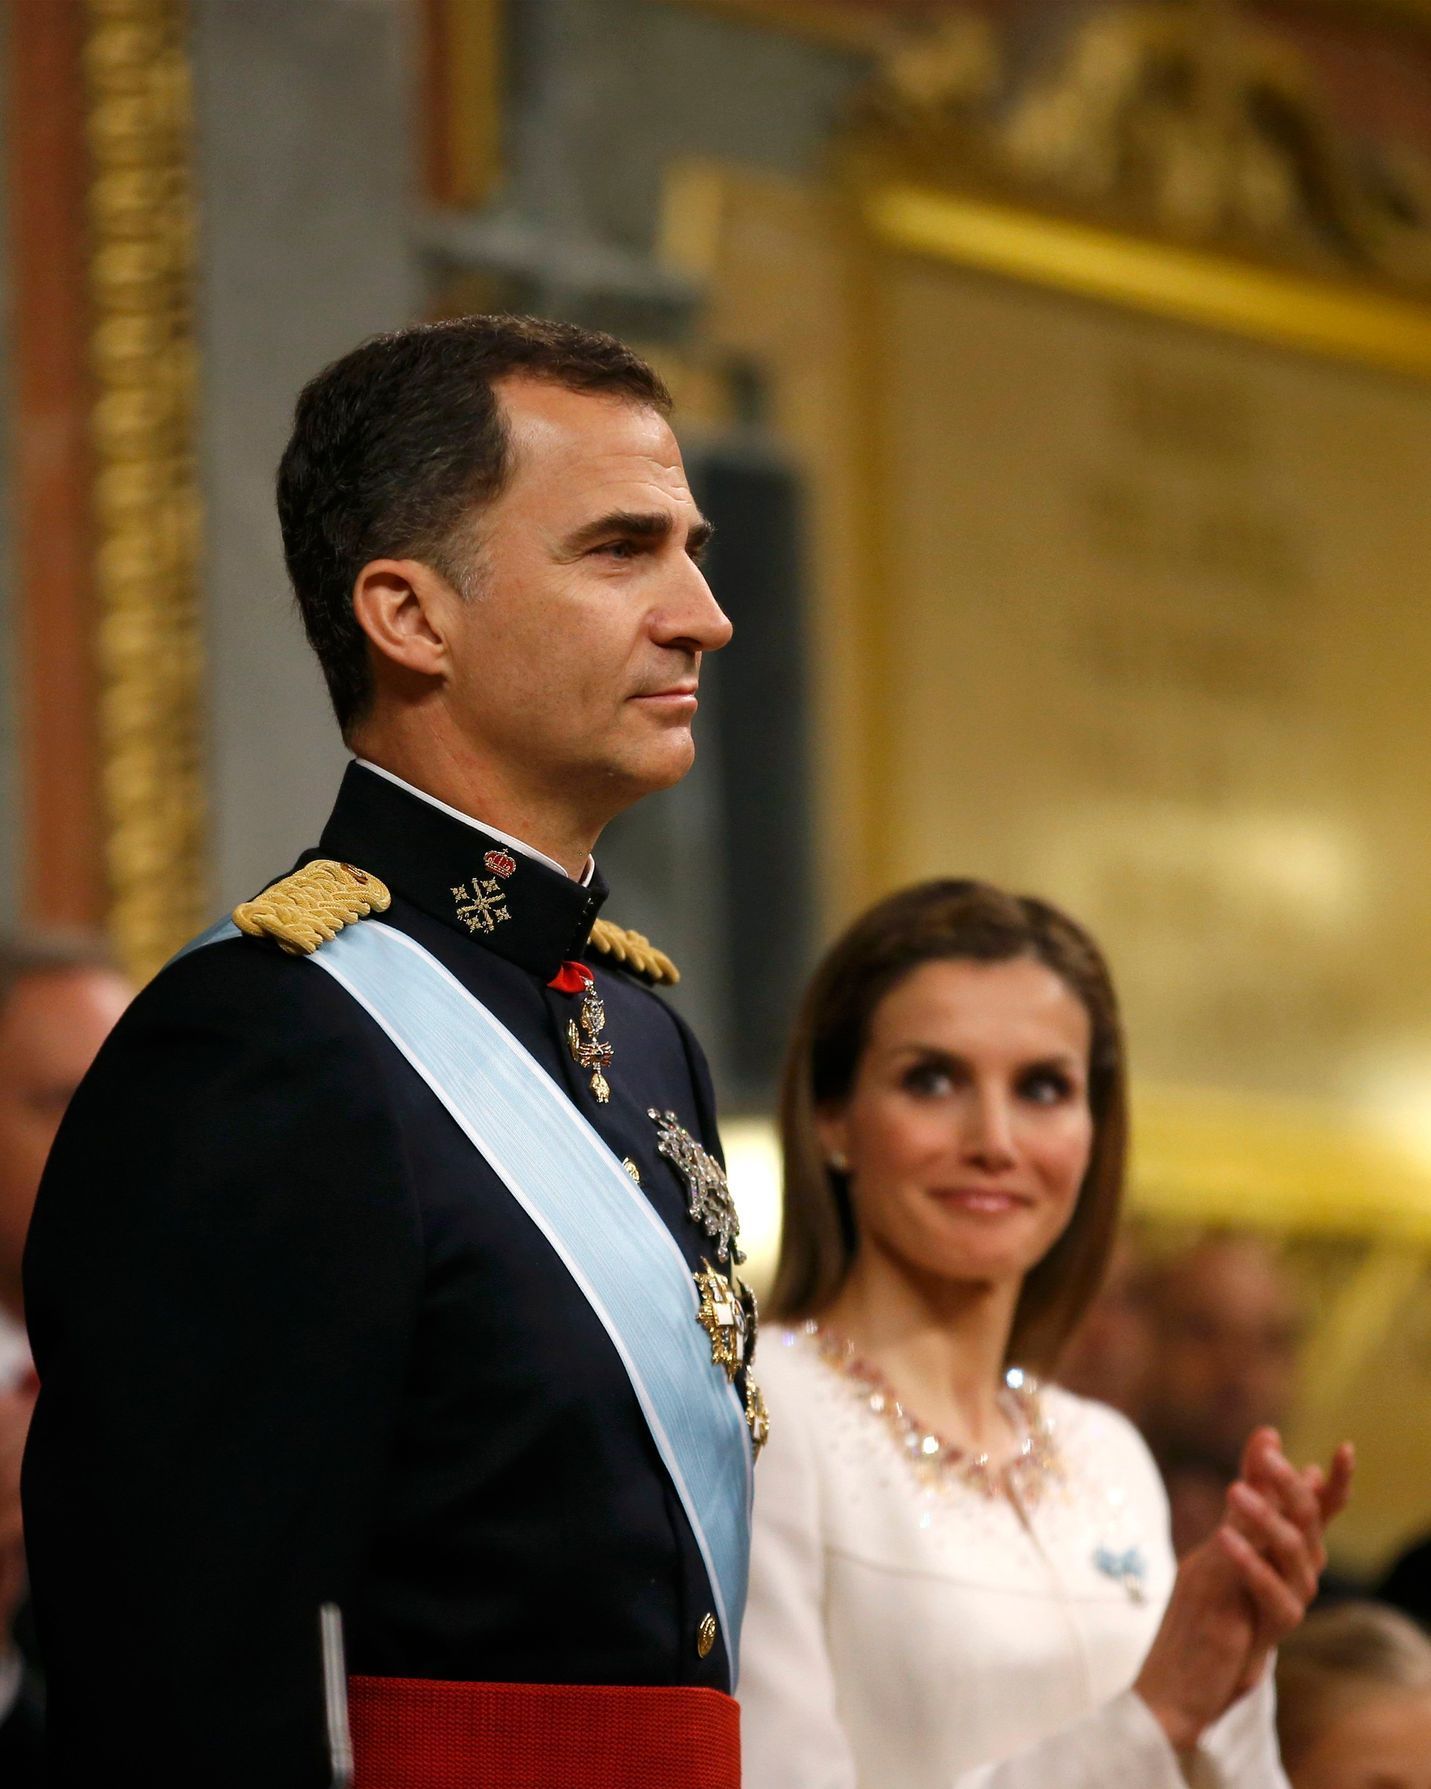 Korunovace španělského krále Felipeho VI.